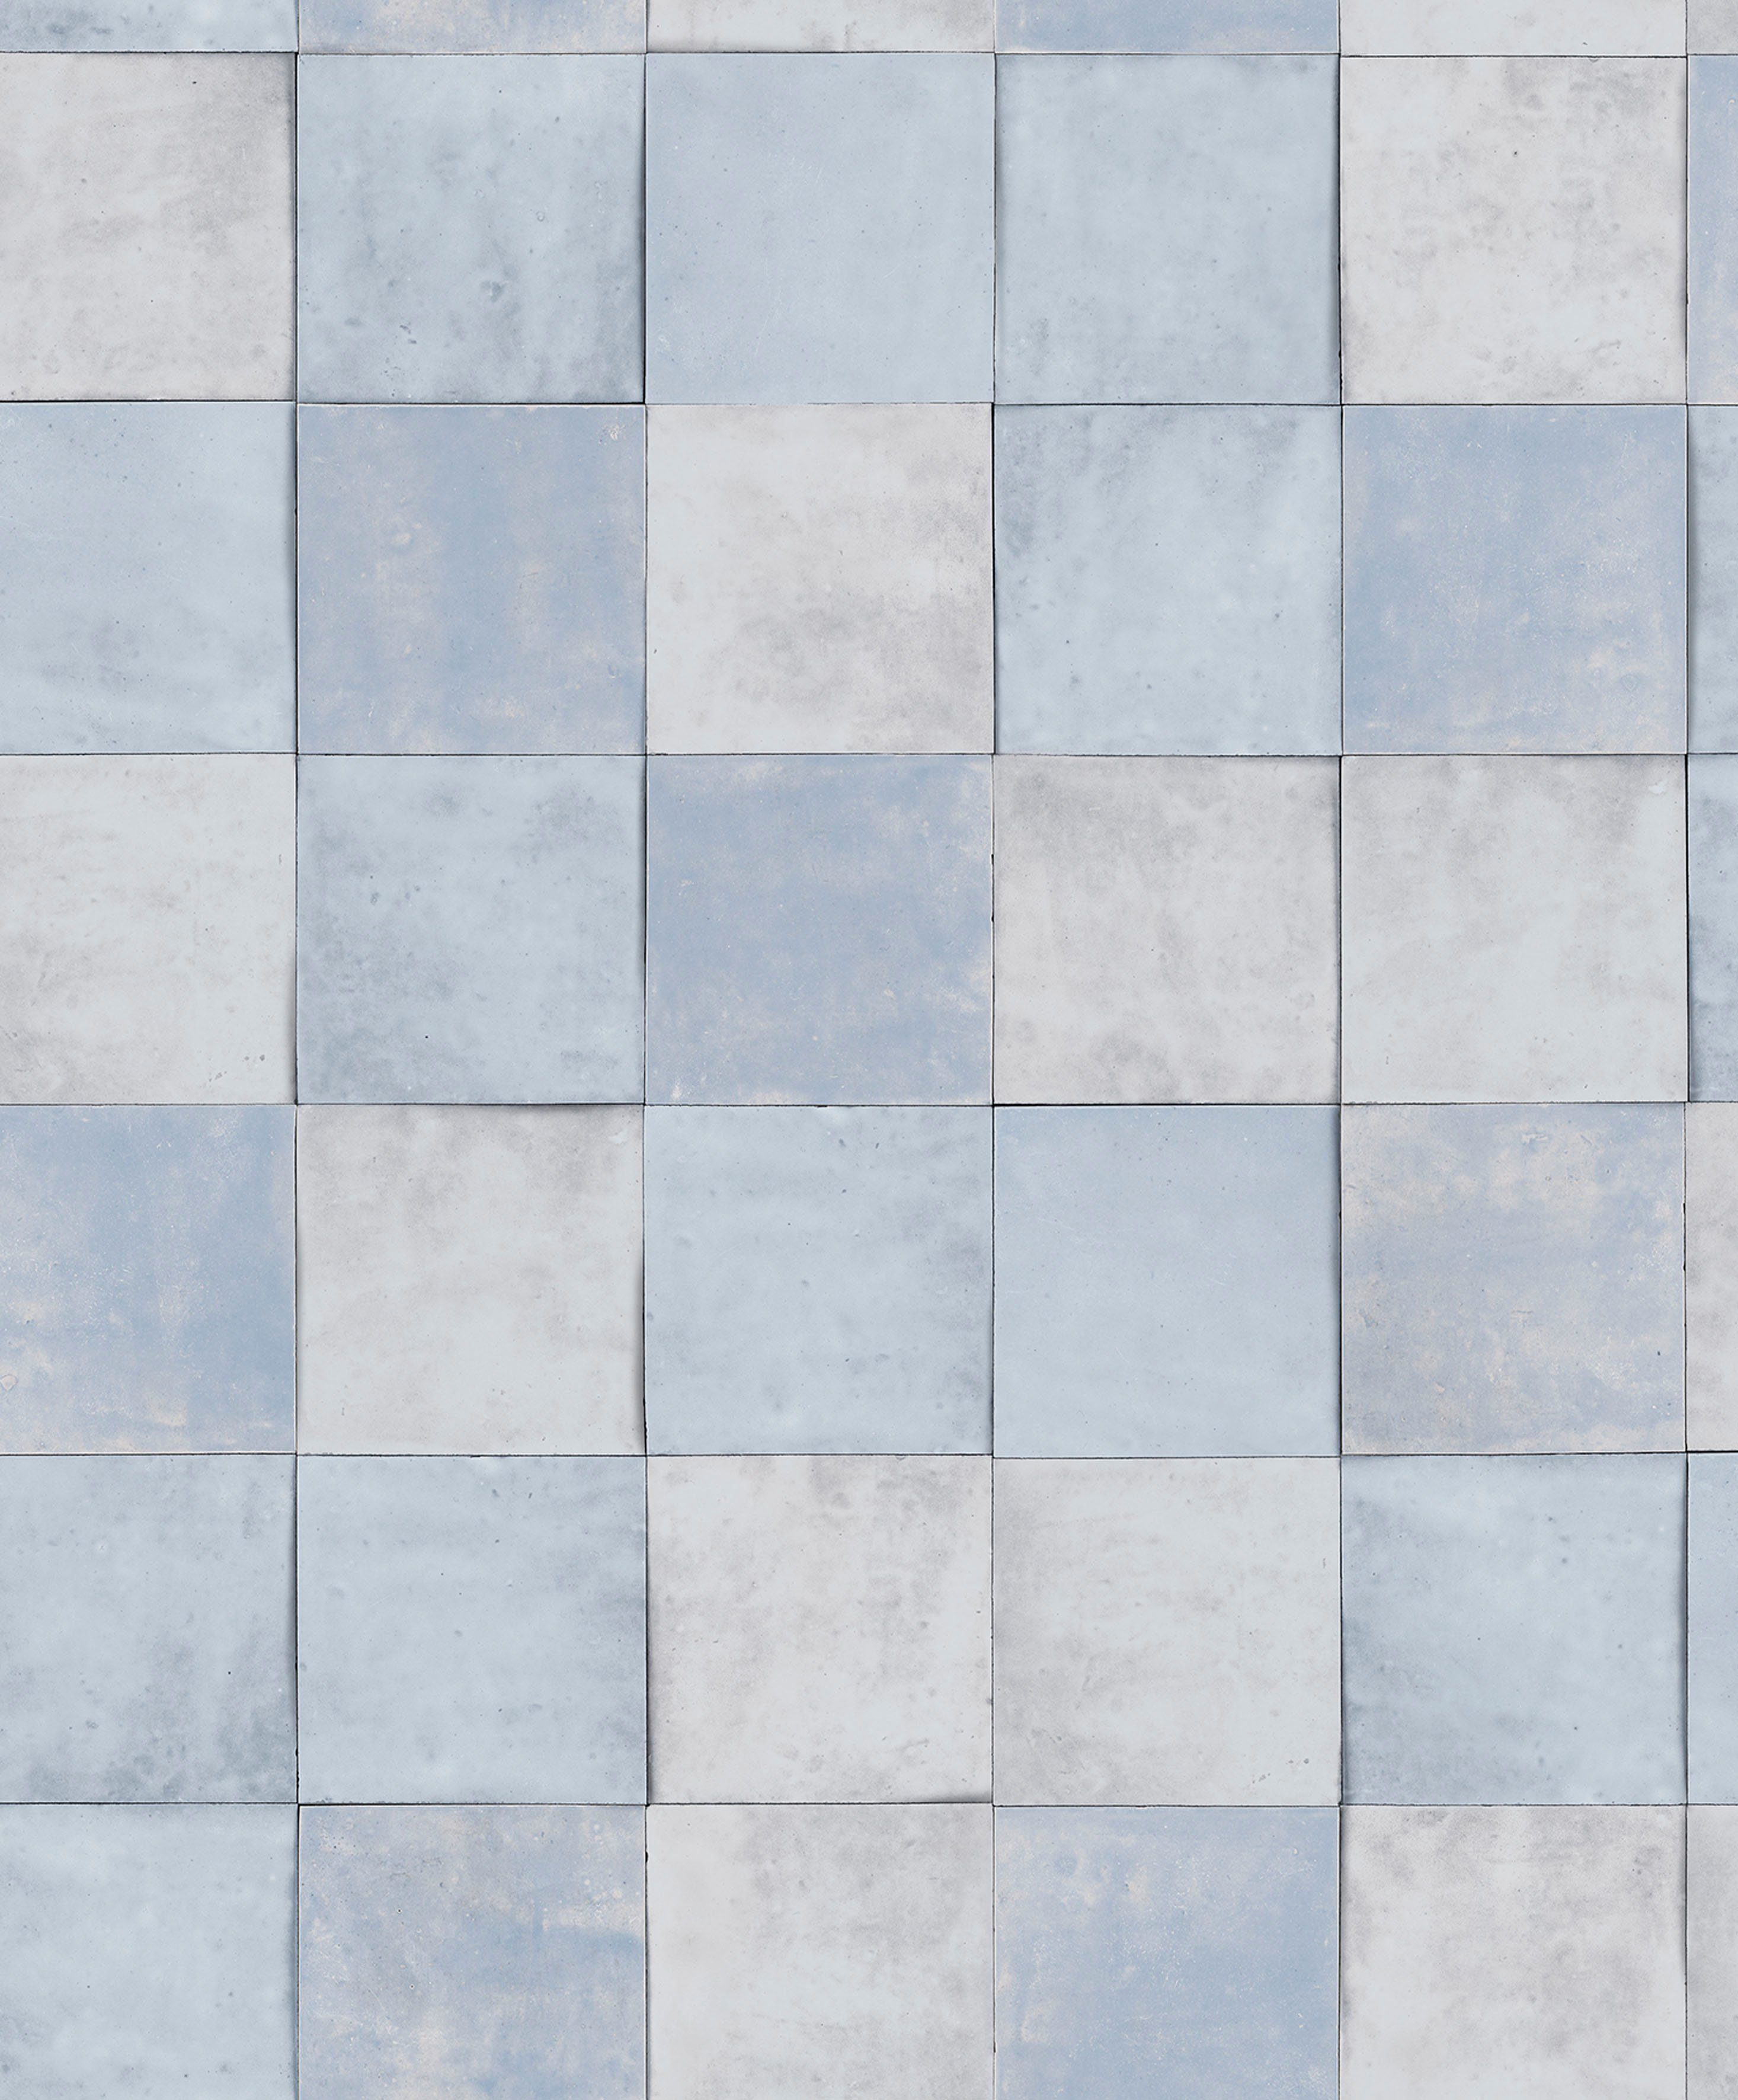 Wohnzimmer glatt, helles-himmelblau Tile, für moderne Küche Vliestapete Fototapete Marburg matt, Schlafzimmer